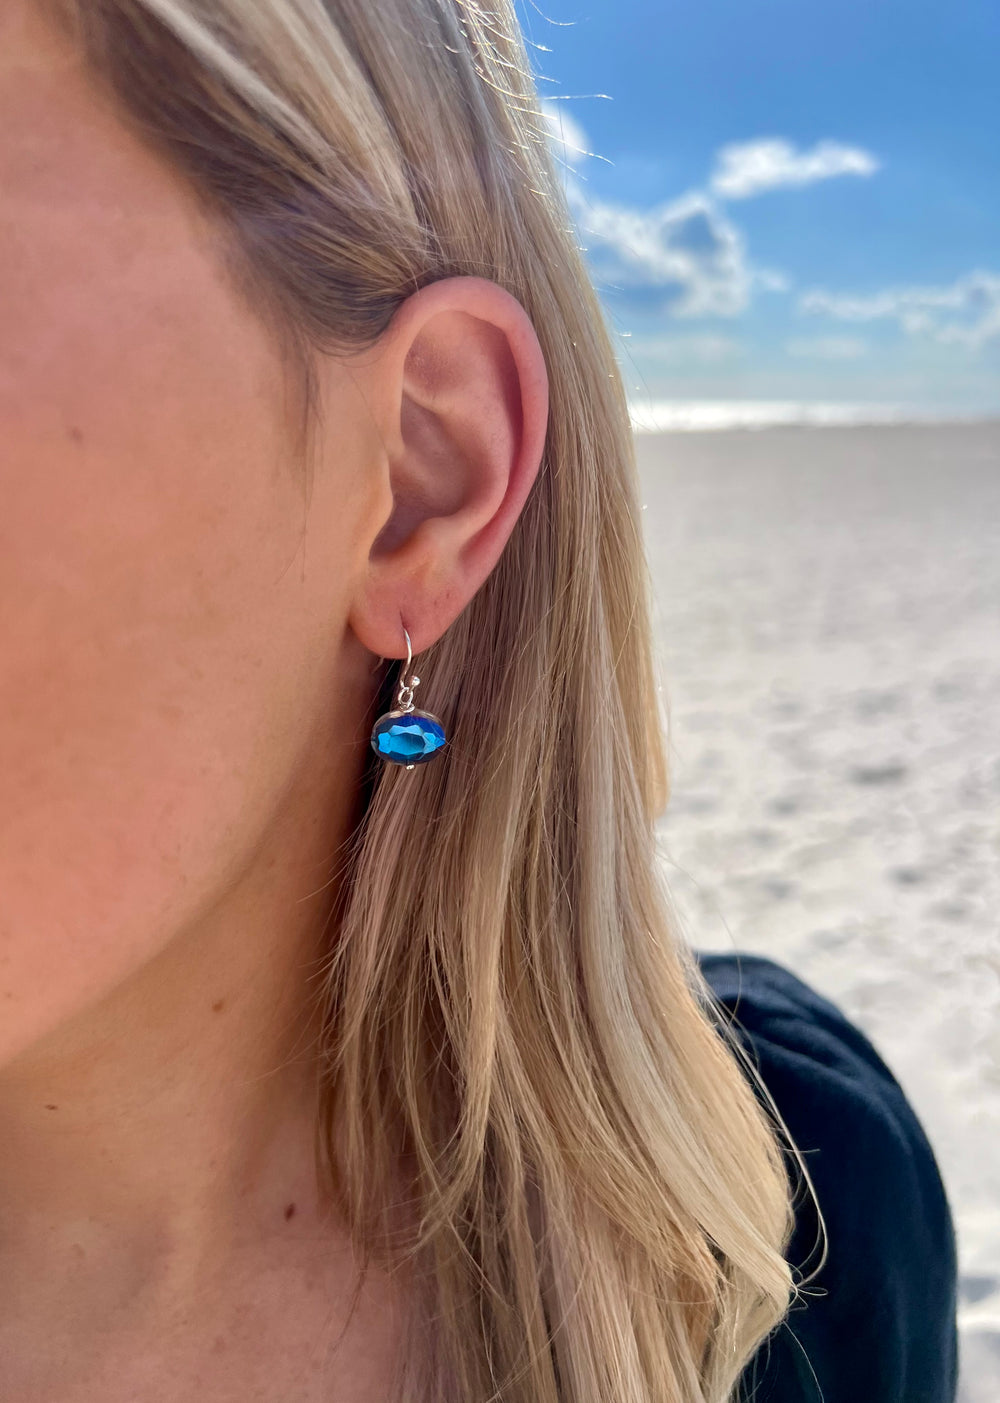 Tara silver dangle earrings with blue reflective detail in ear